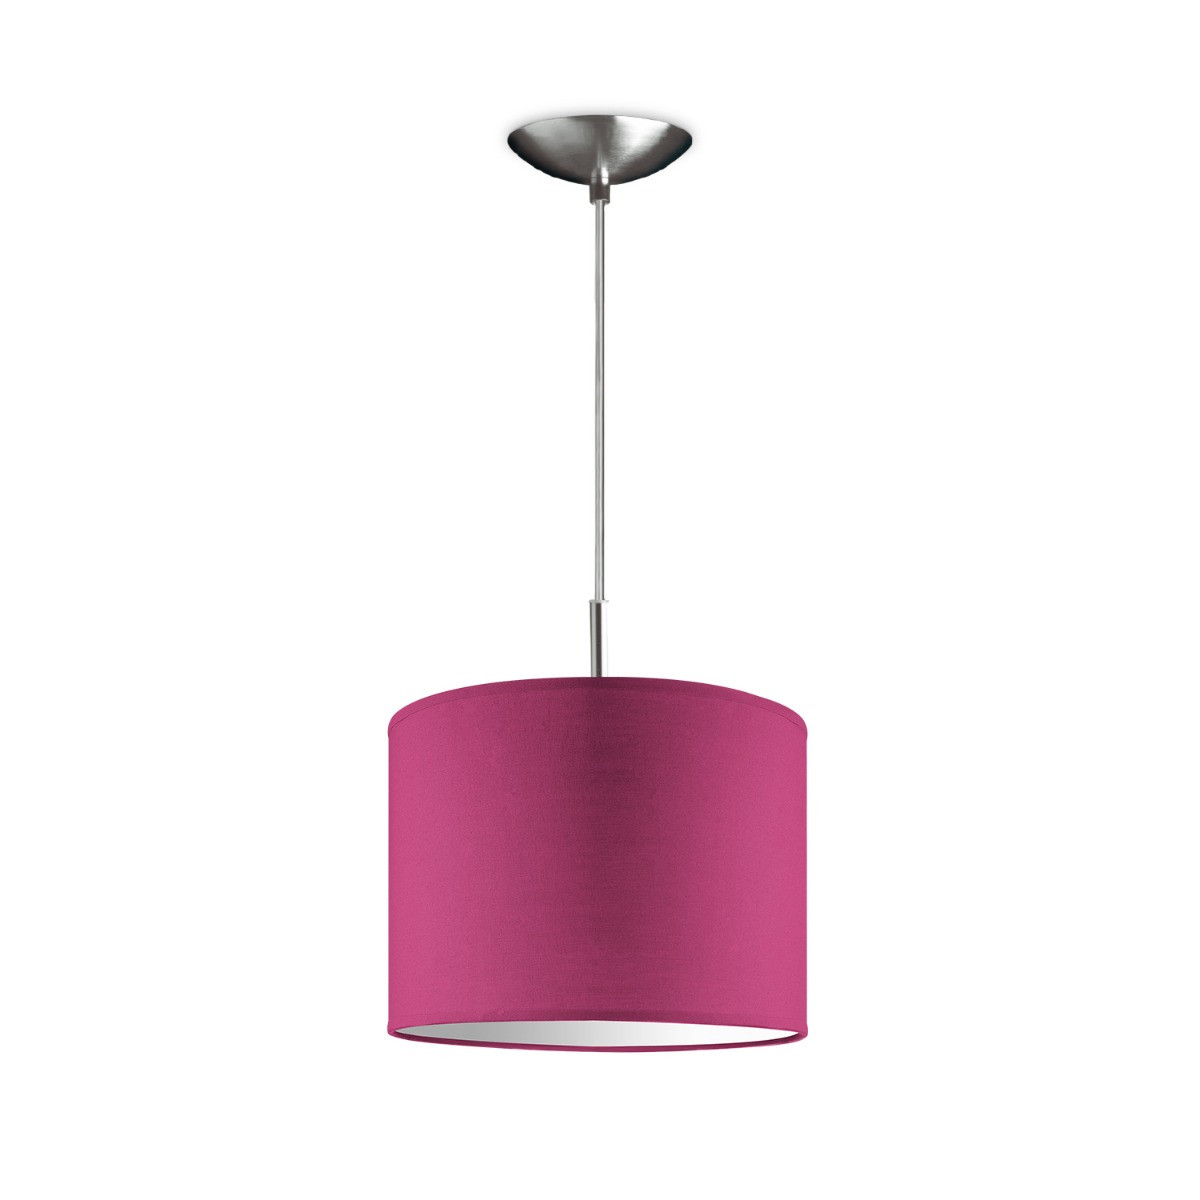 Light depot - hanglamp tube deluxe bling Ø 25 cm - roze - Outlet